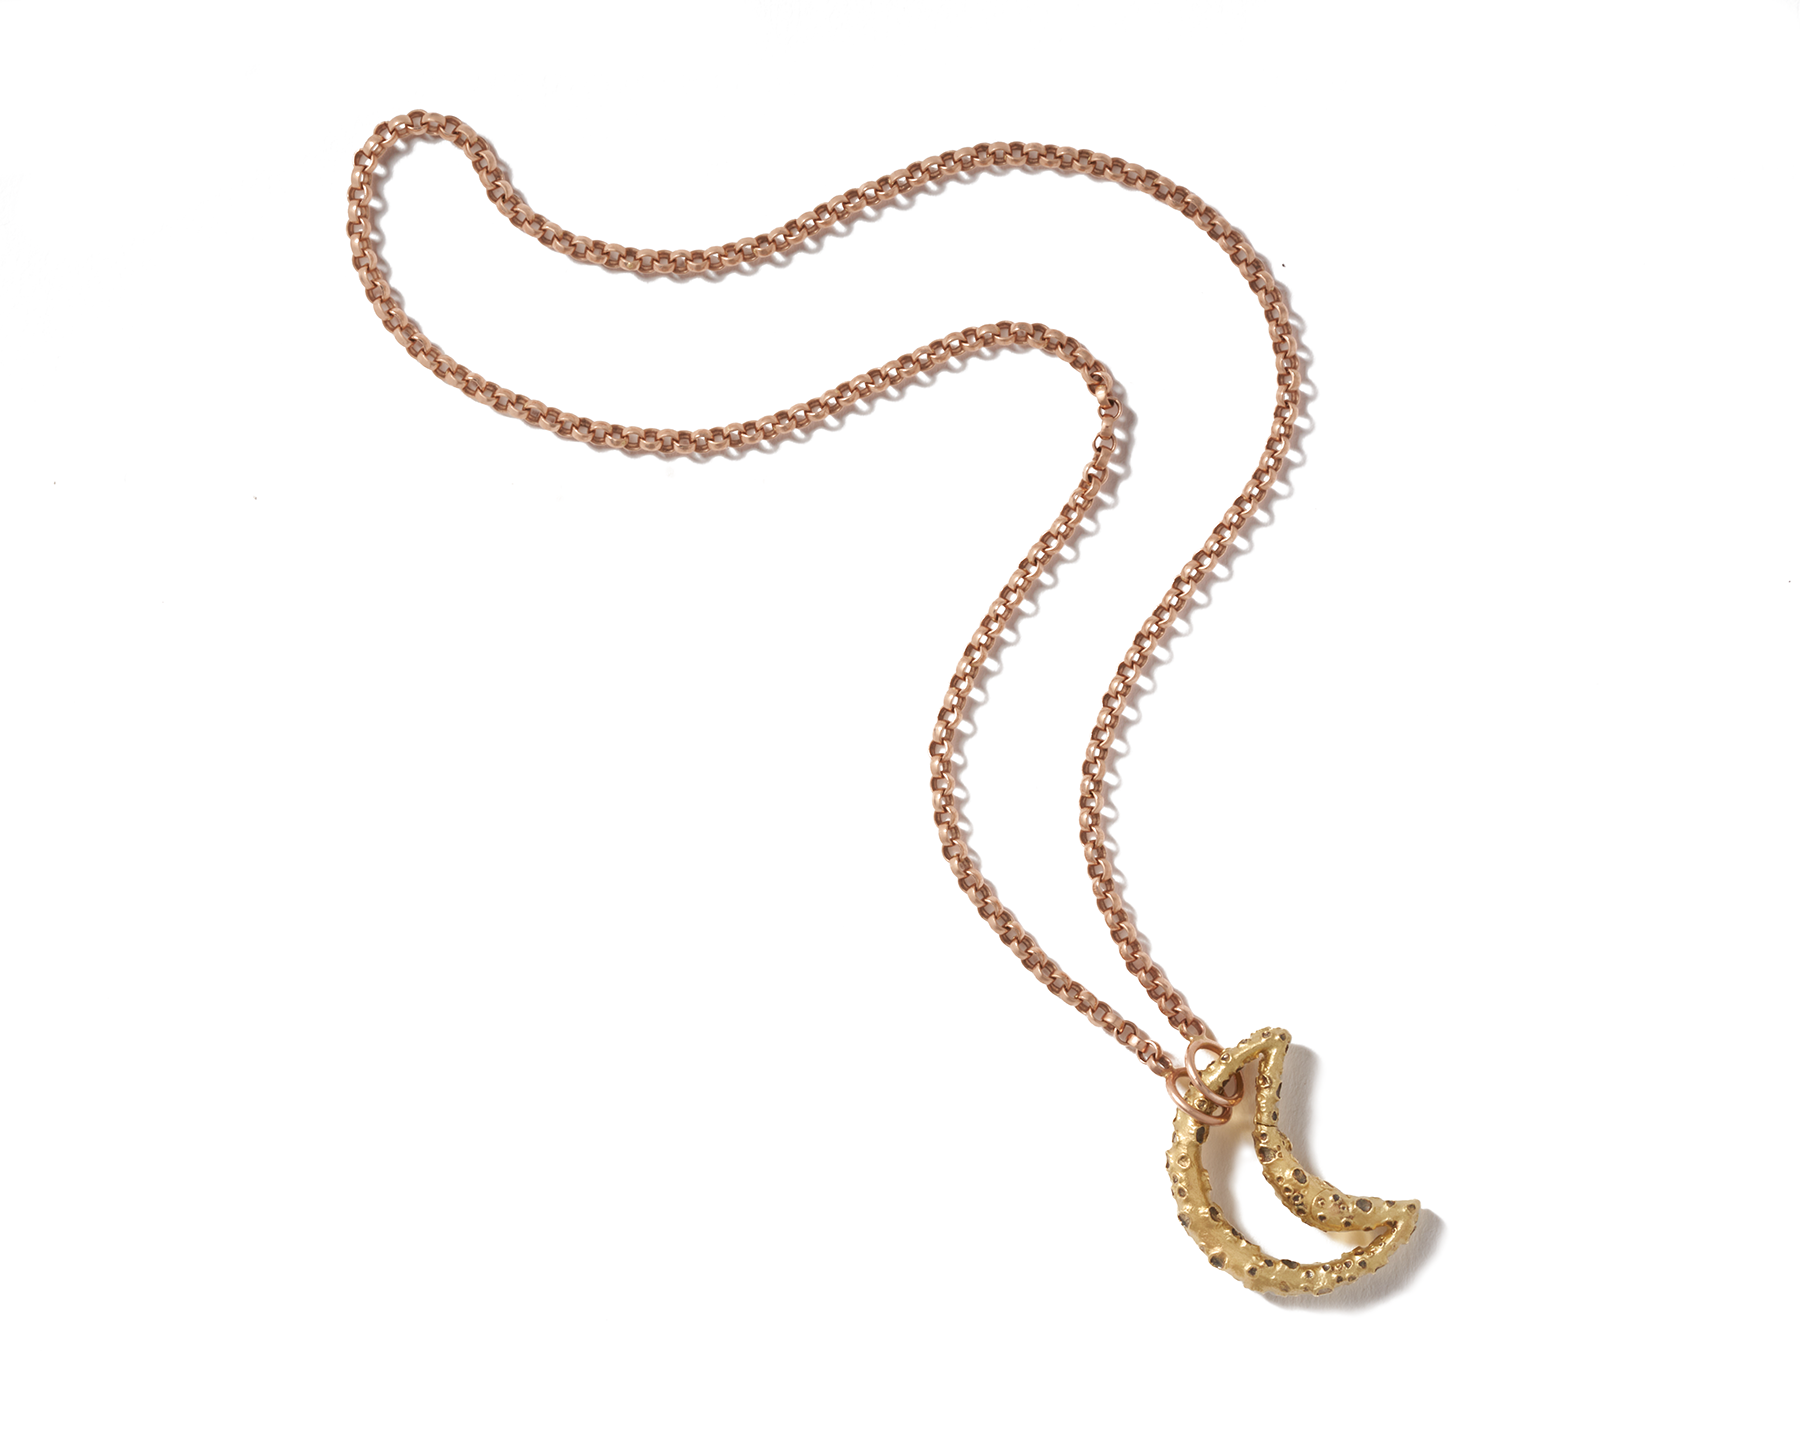 Original Gold & Silver Carabiner Lock Necklaces | Marla Aaron